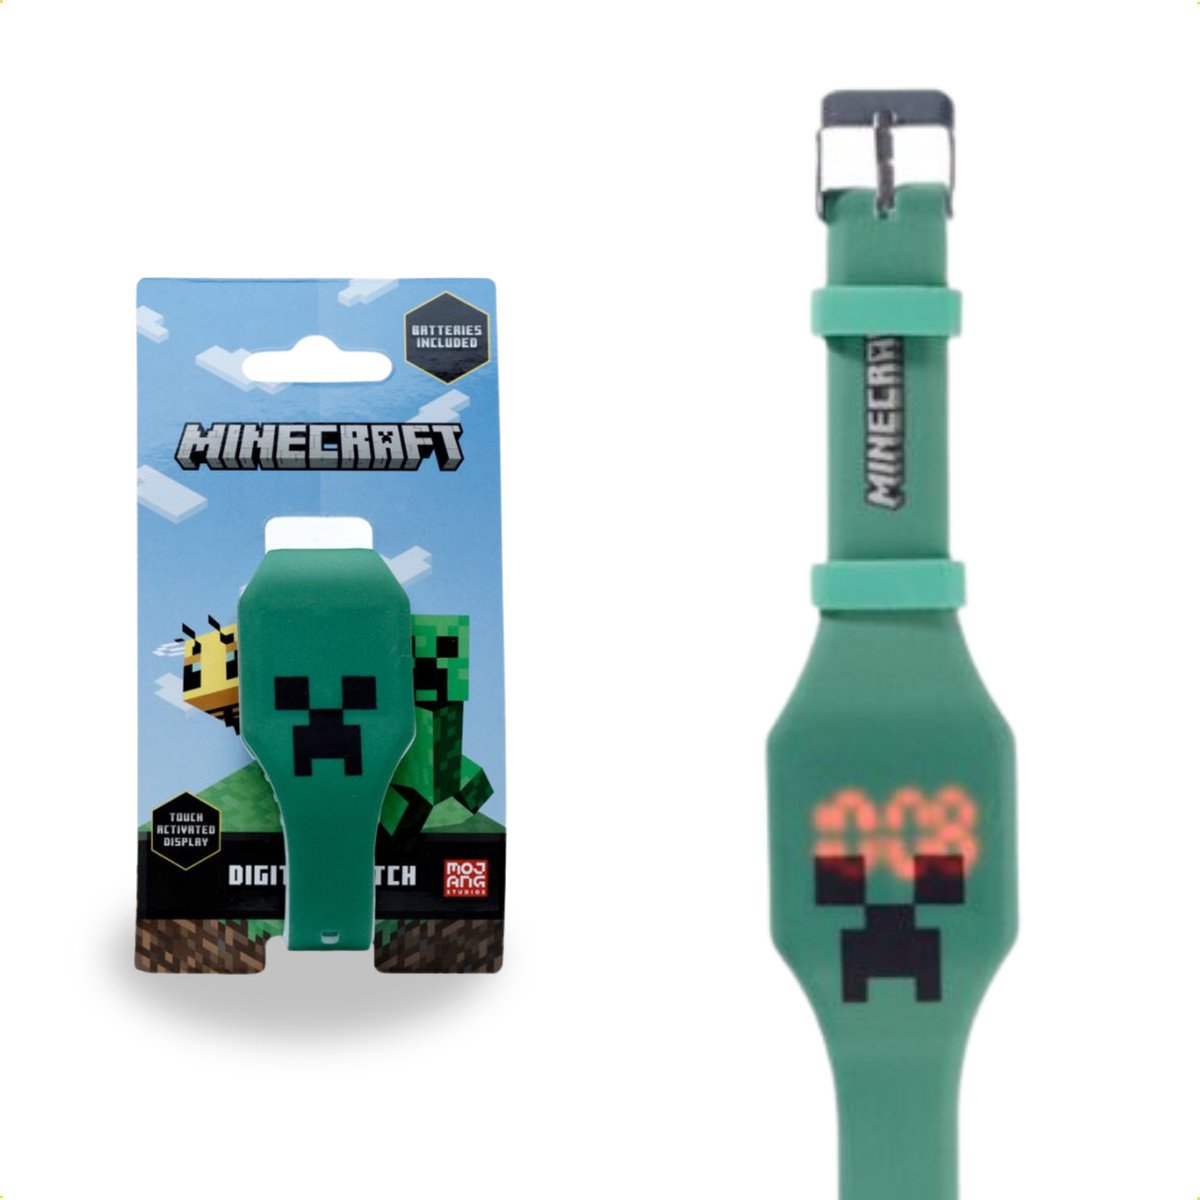 Minecraft Horloge - Met Silliconen band - Kinderhorloge - Digitale tijd - Datum en Tijd - Groen - Creeper